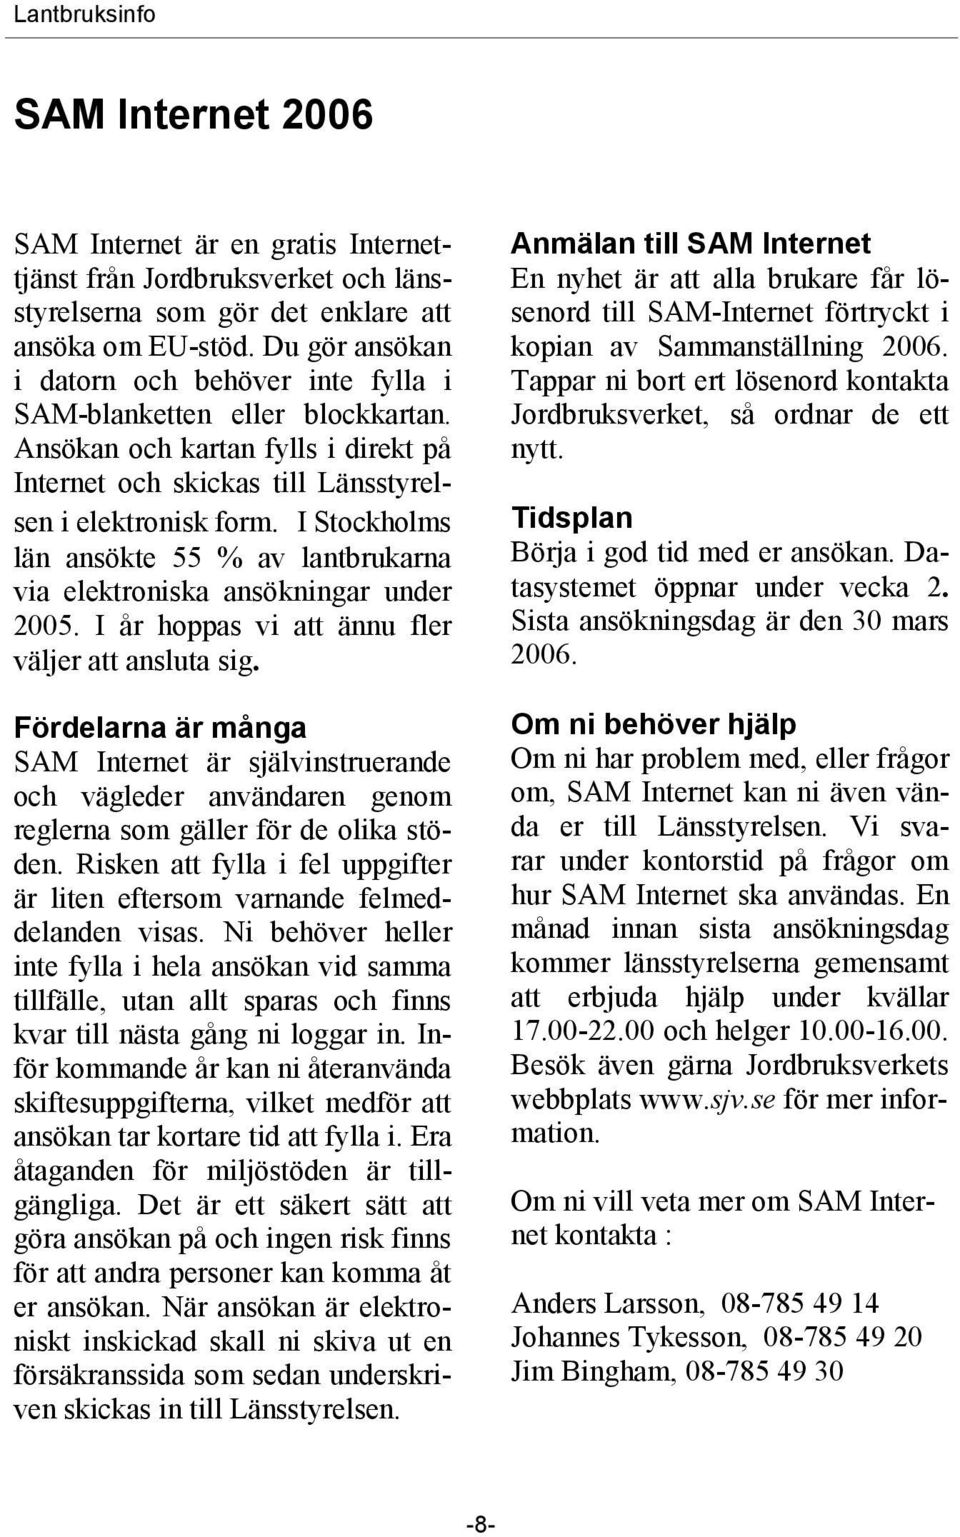 I Stockholms län ansökte 55 % av lantbrukarna via elektroniska ansökningar under 2005. I år hoppas vi att ännu fler väljer att ansluta sig.